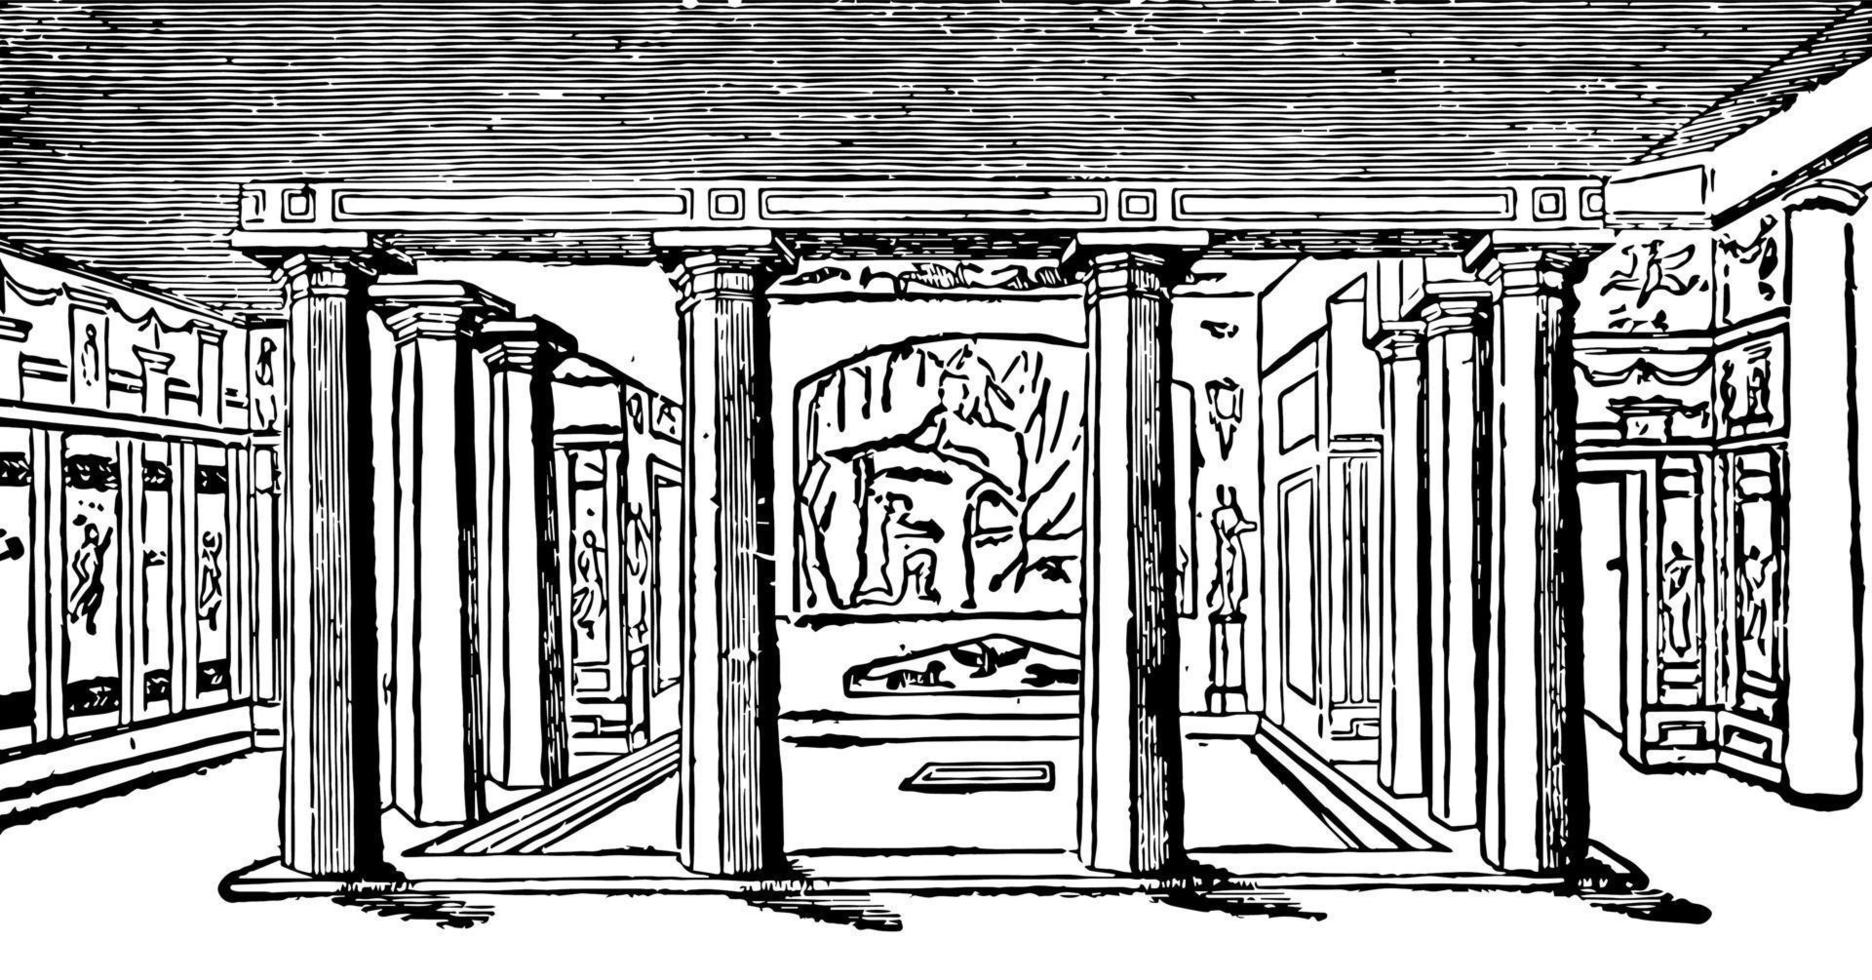 pompeiiska hus, konstruktion består huvudsakligen av betong eller tegel, årgång gravyr. vektor